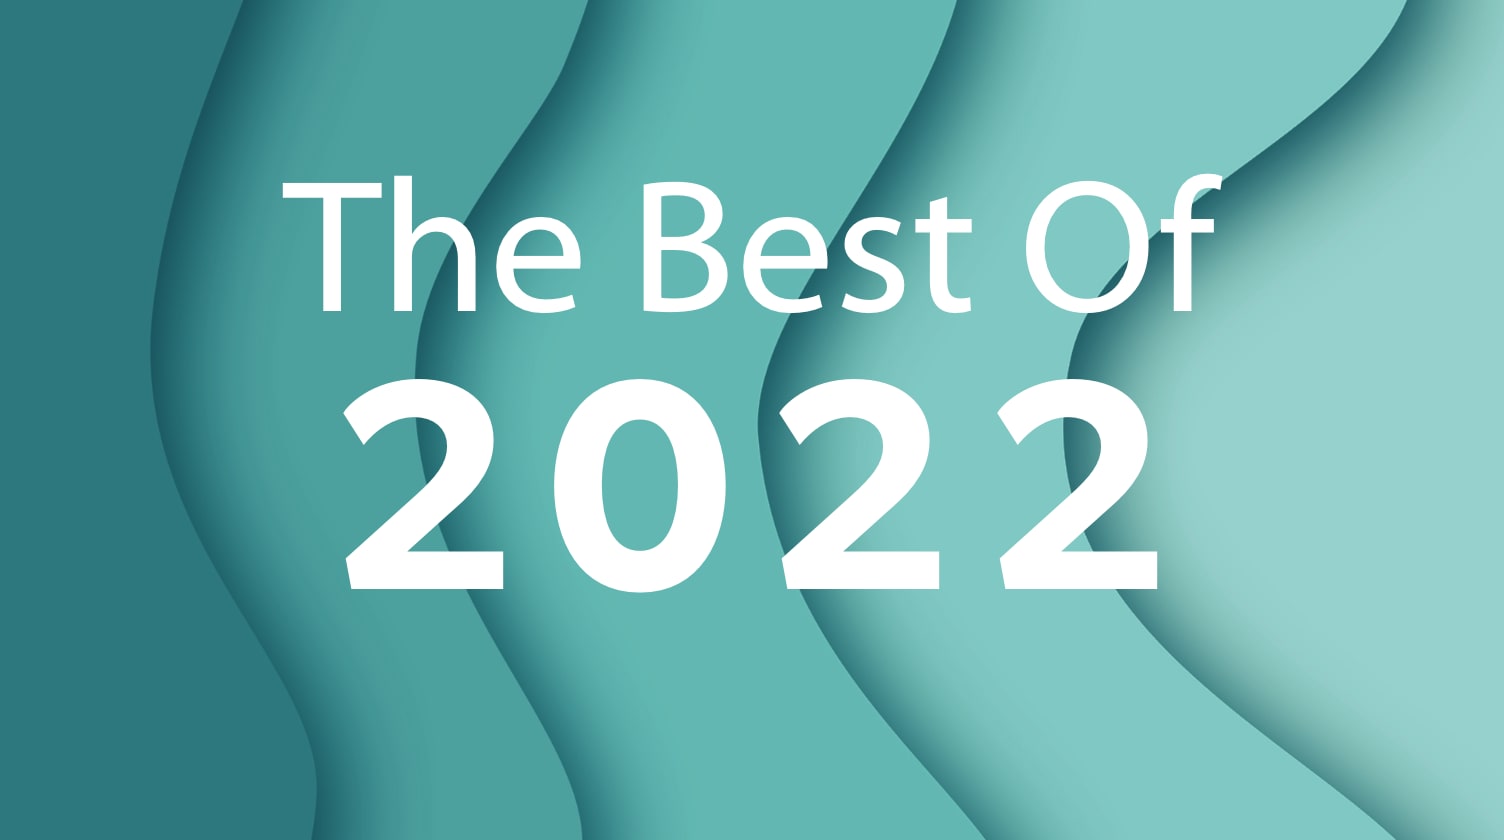 Best of 2022